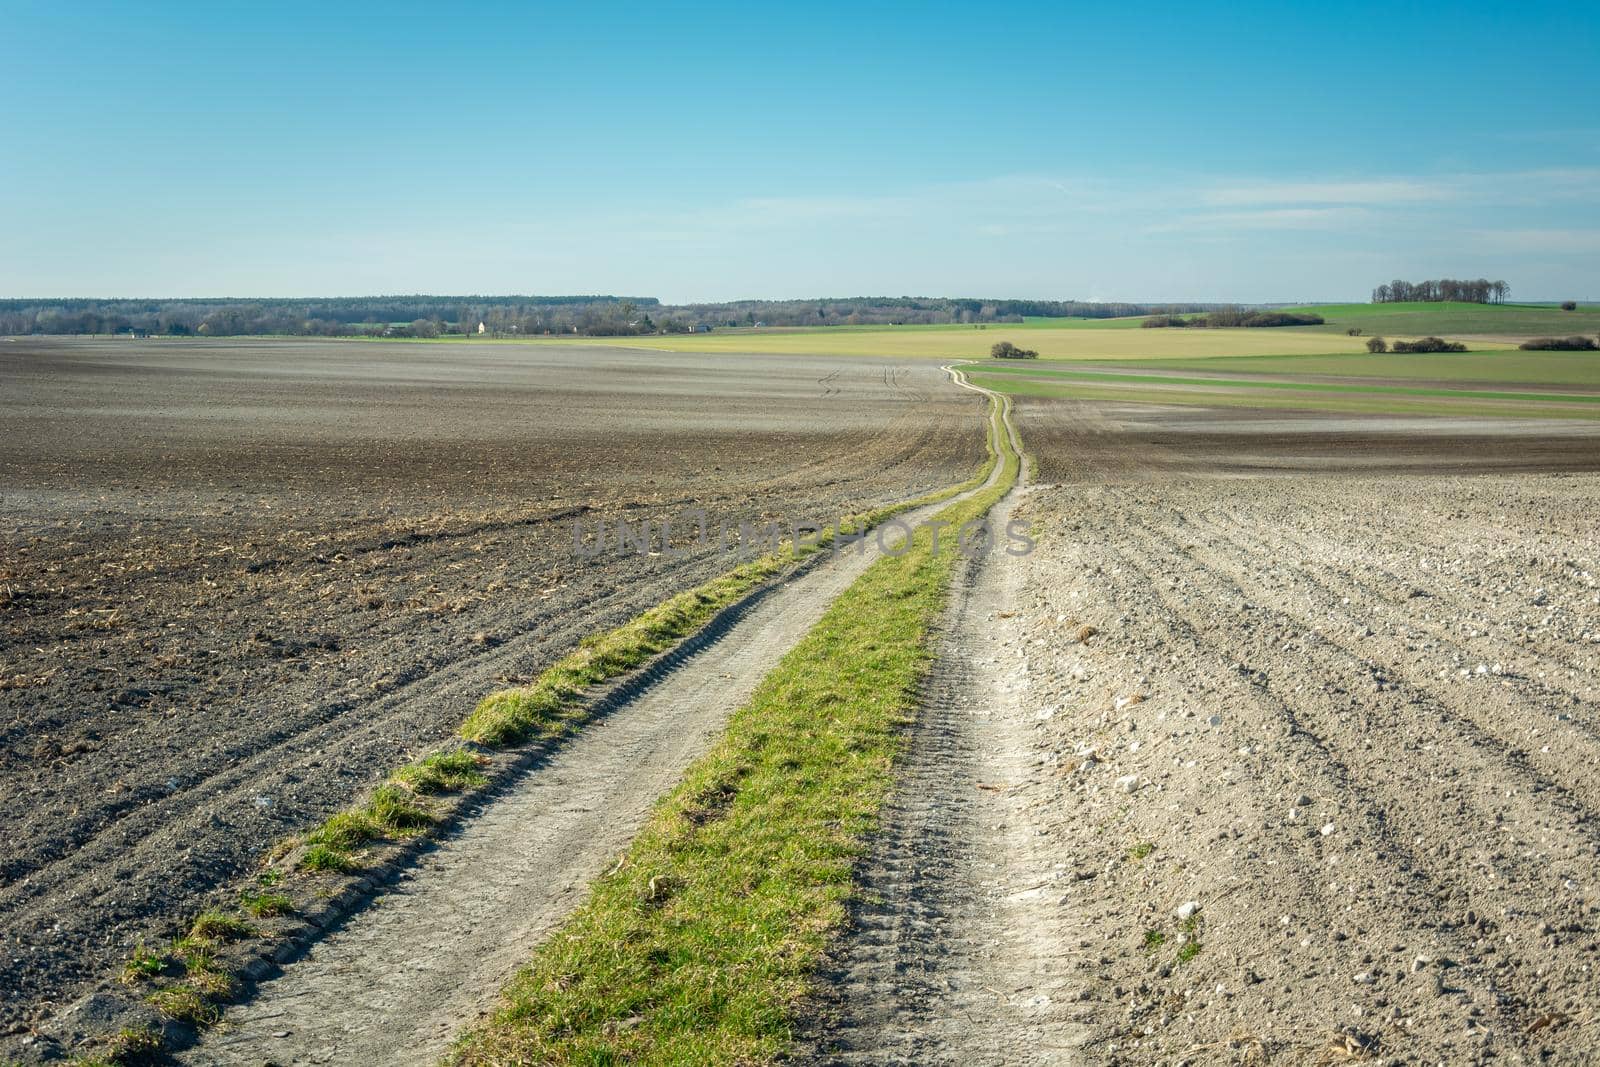 A long dirt road through a plowed field by darekb22